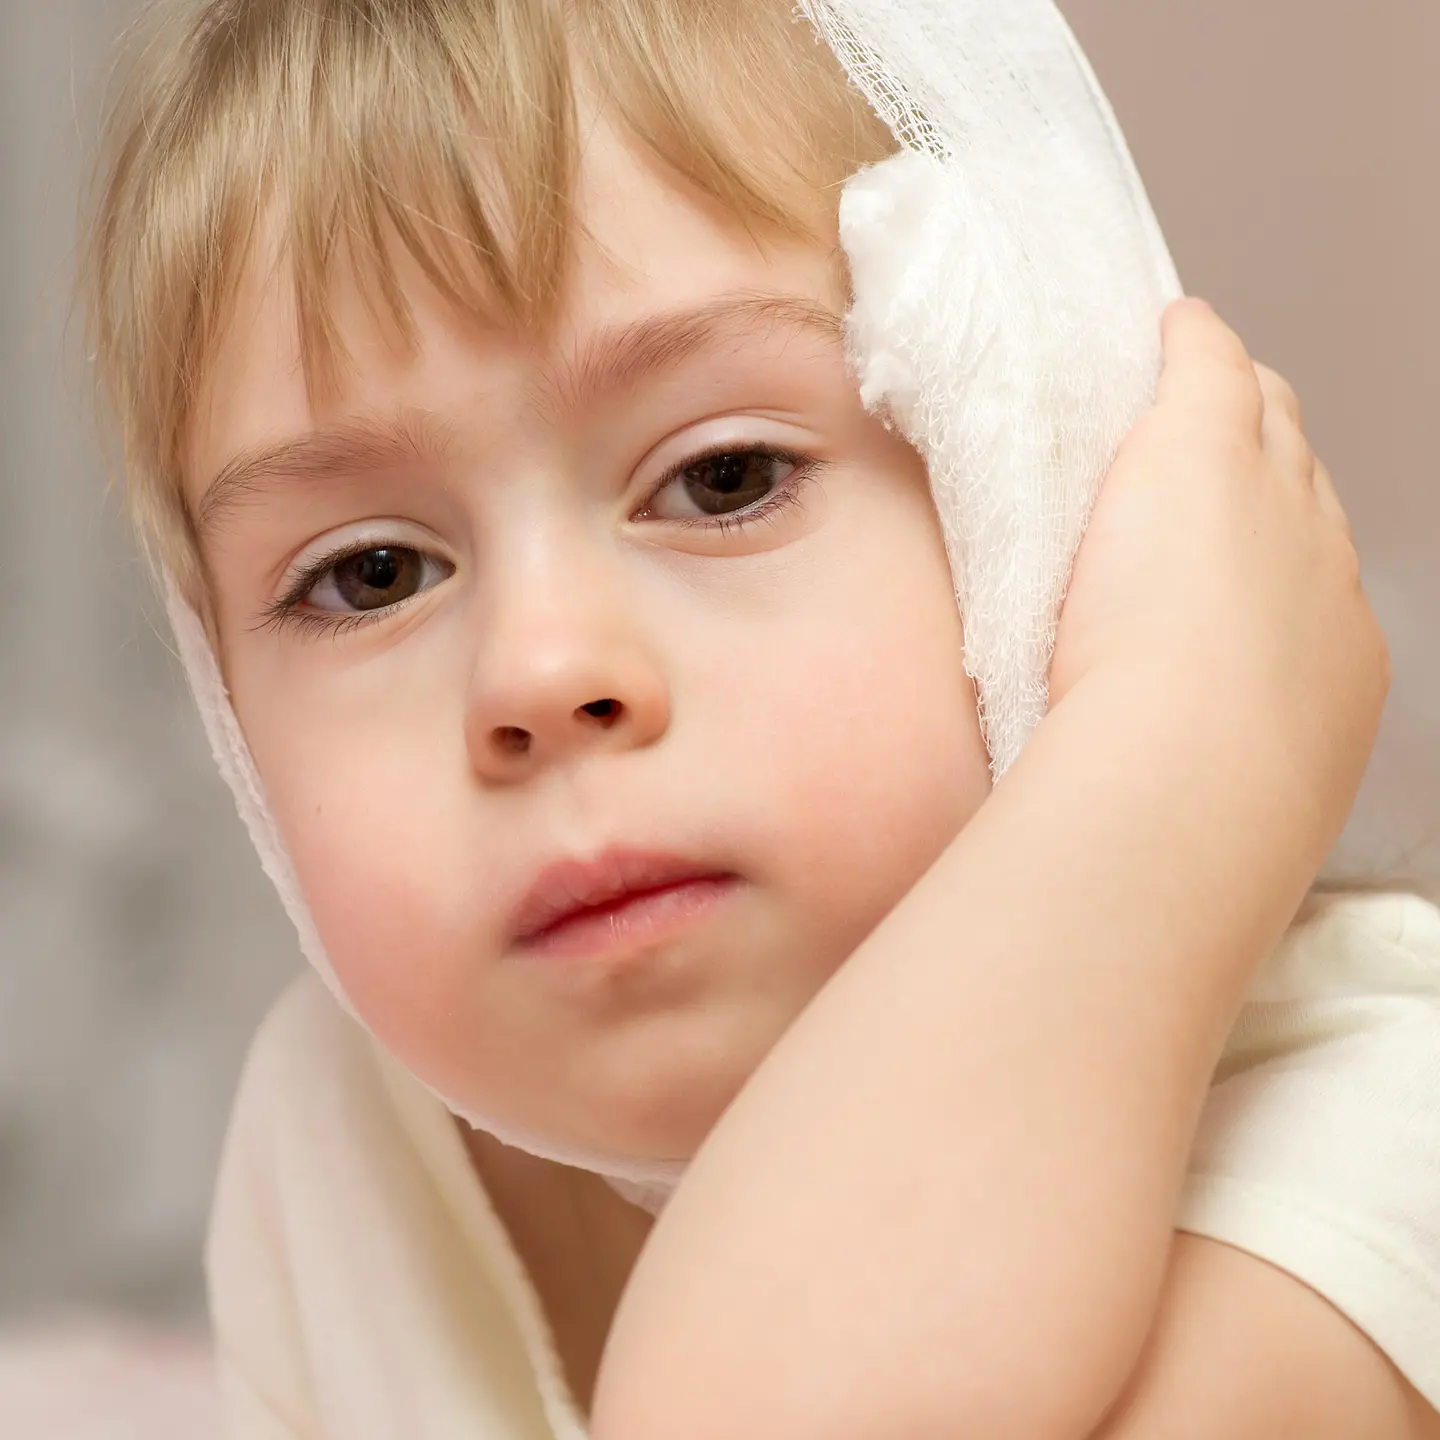 Zu sehen ist ein Kind mit einem Verband am Ohr